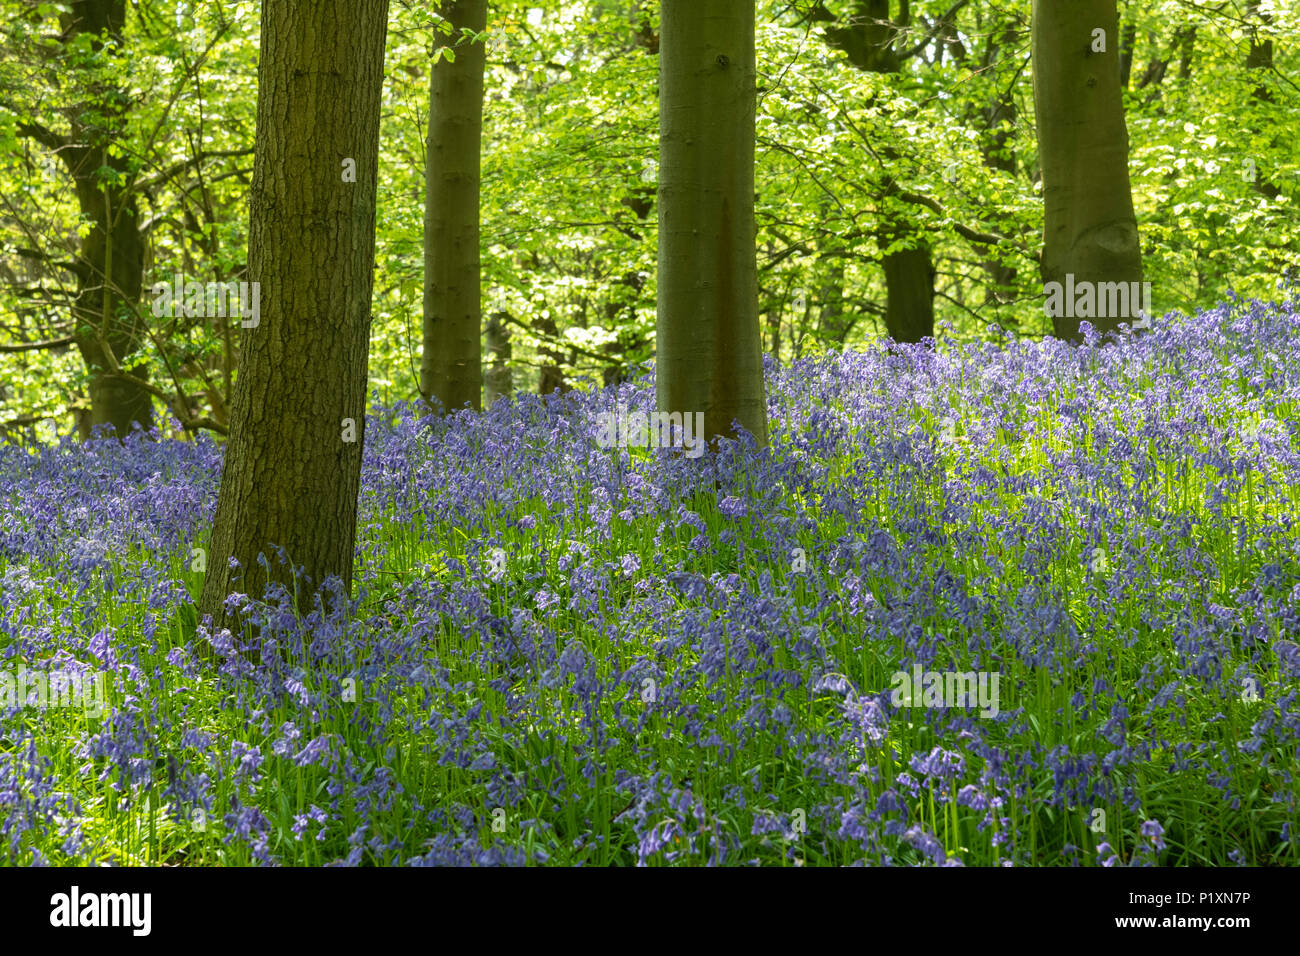 Bluebells Flowering creare bellissimi colorato tappeto blu sotto alberi soleggiati in primavera - Middleton Woods, Ilkley, West Yorkshire, Inghilterra, Regno Unito. Foto Stock